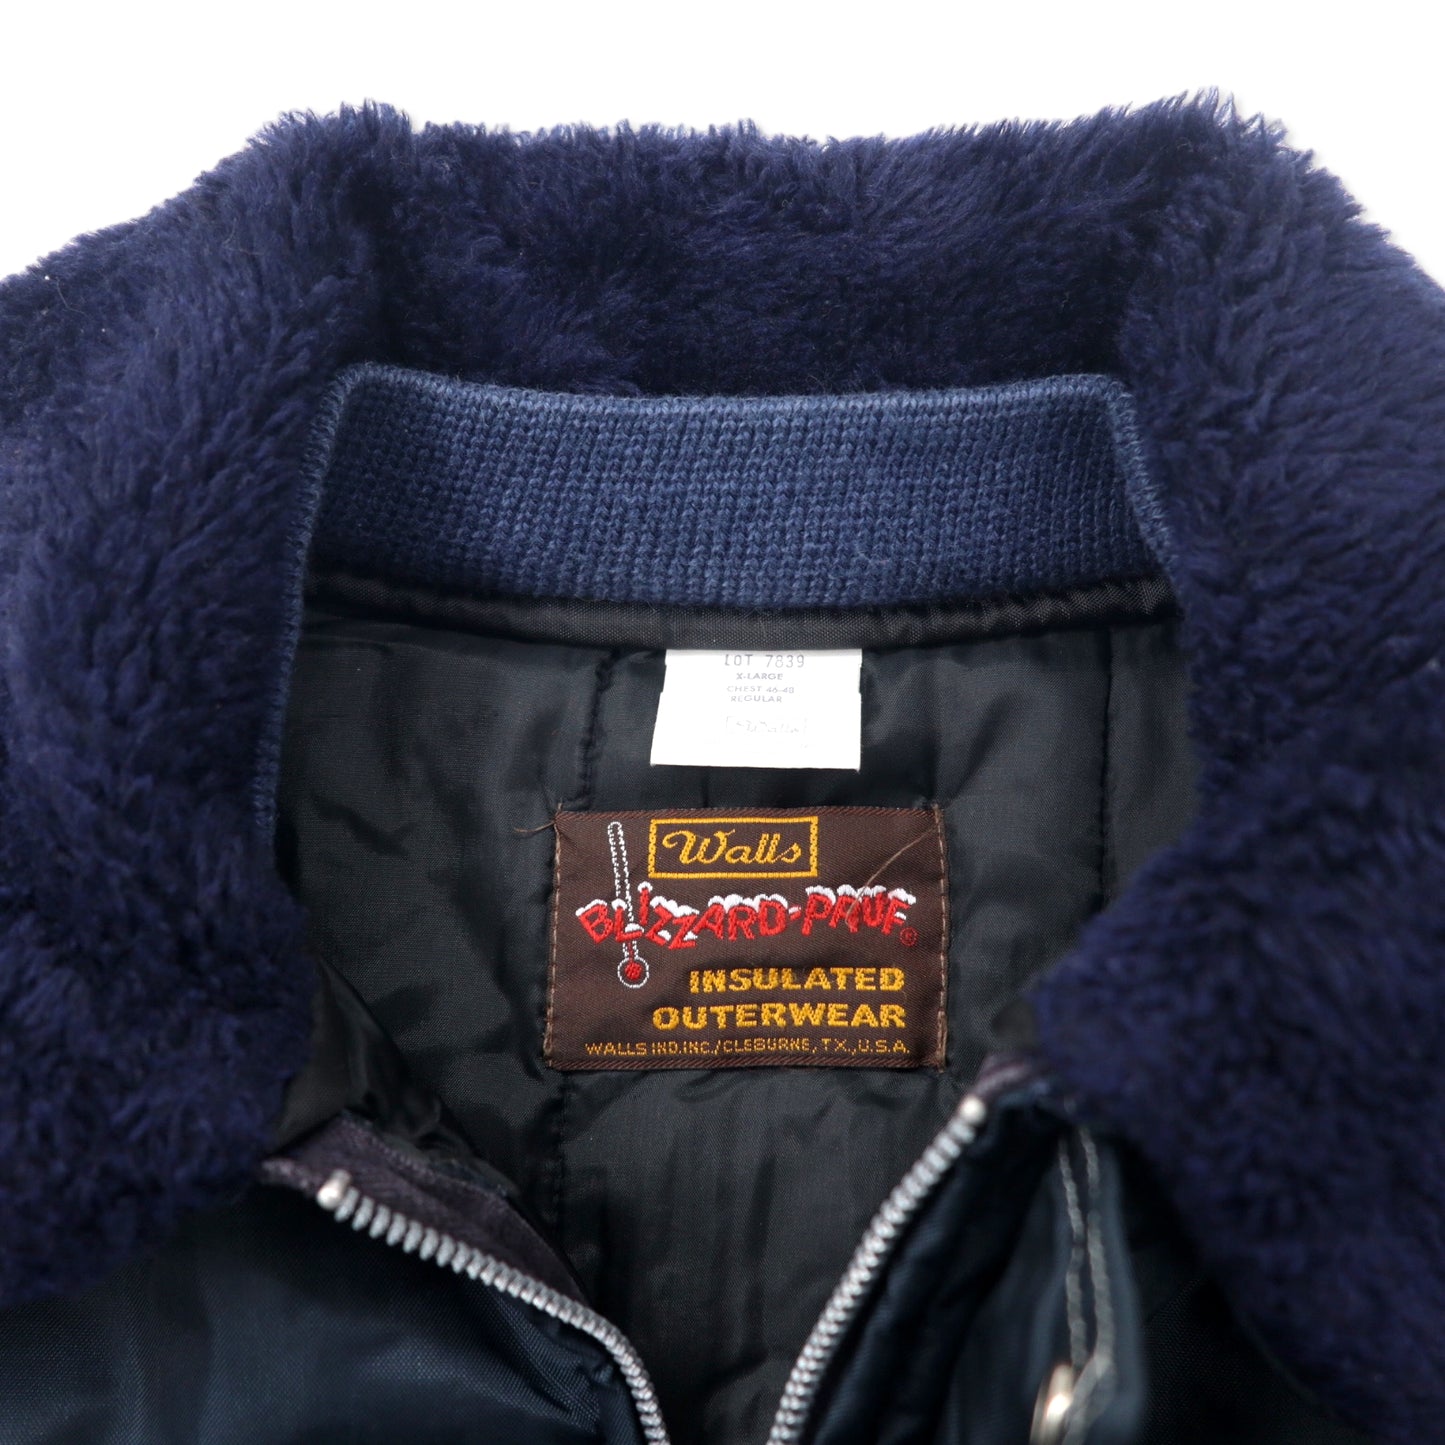 Walls USA製 80年代 BLIZZARD-PRUF 襟ボア インサレーション ワークジャケット XL ネイビー ナイロン 中綿 ビッグサイズ